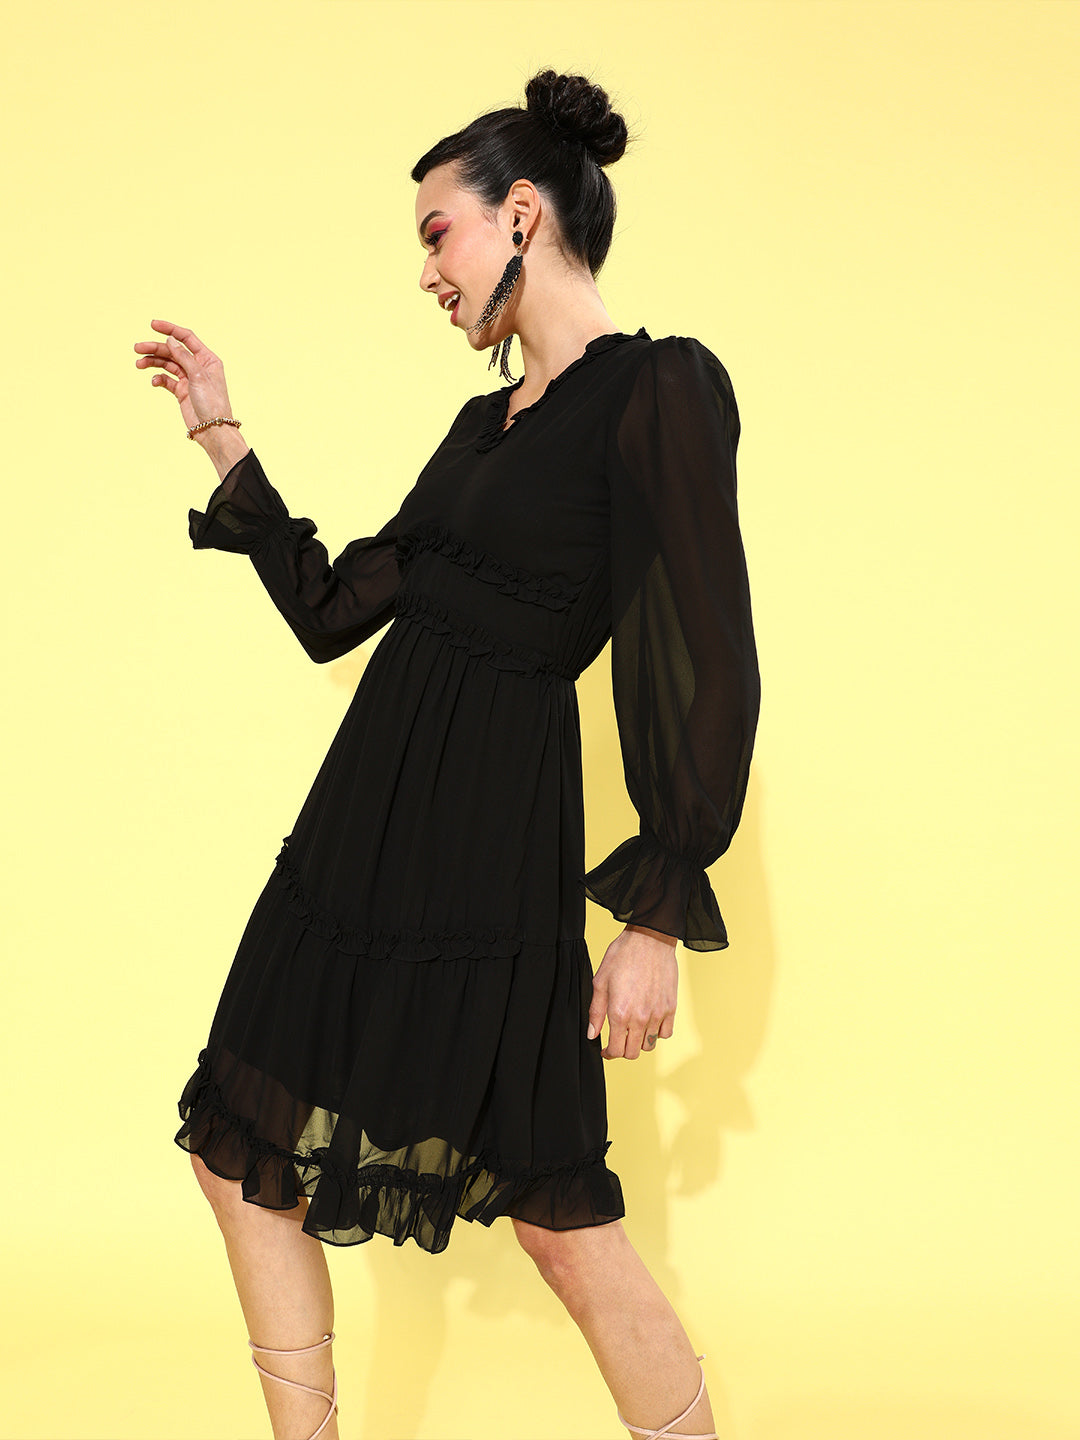 Athena Women Stylish Black Solid Waisted Dress - Athena Lifestyle